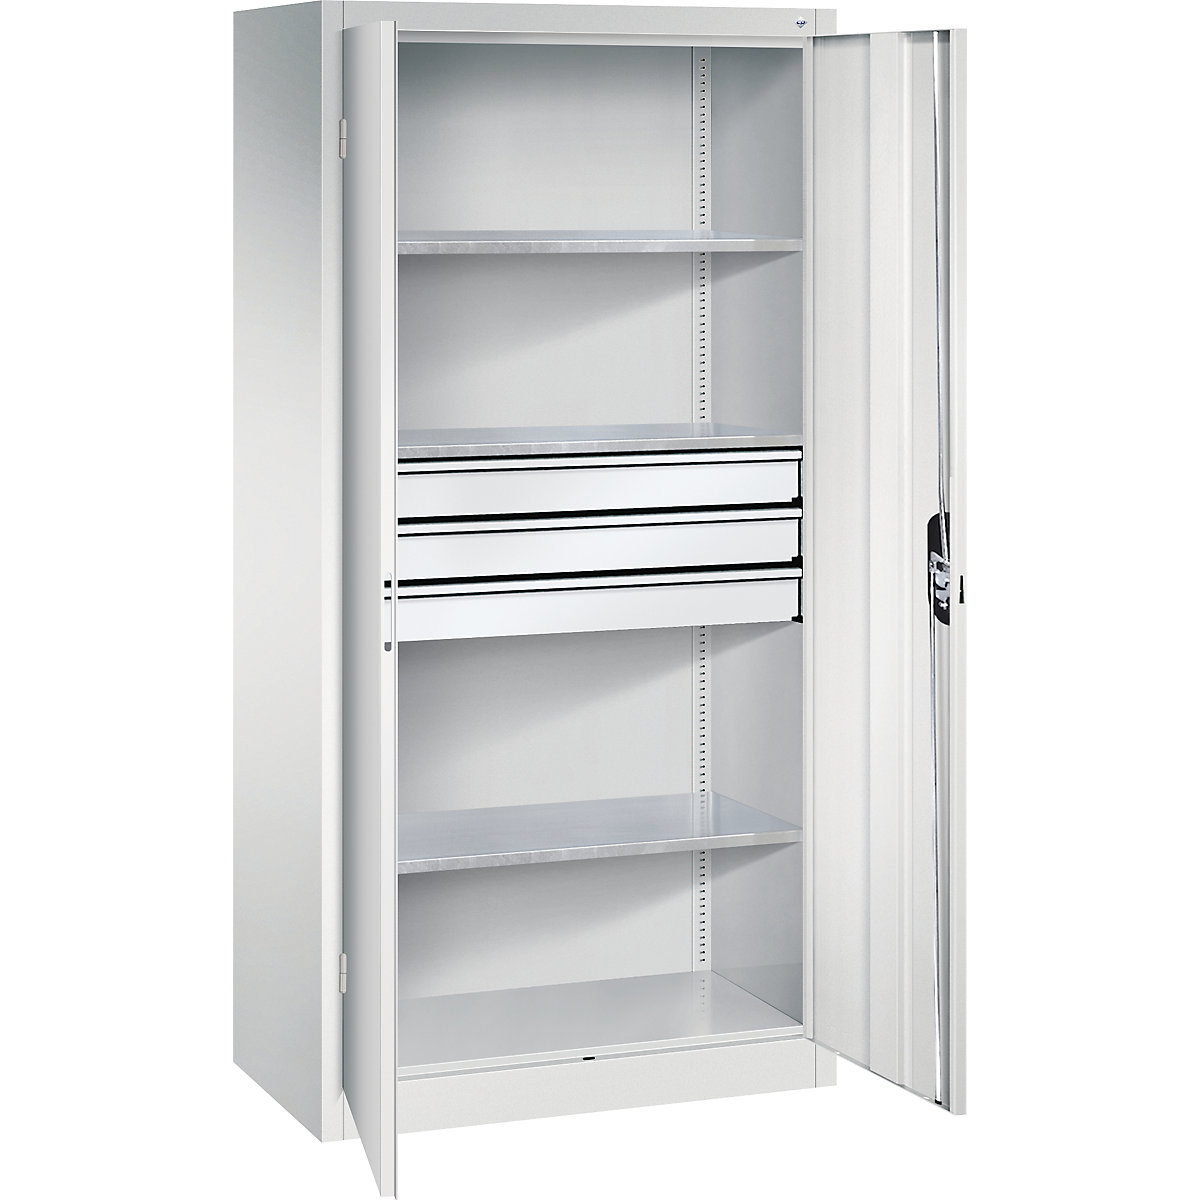 Double door workshop cupboard with drawers – C+P, WxD 930 x 500 mm, 3 shelves, light grey / light grey-3